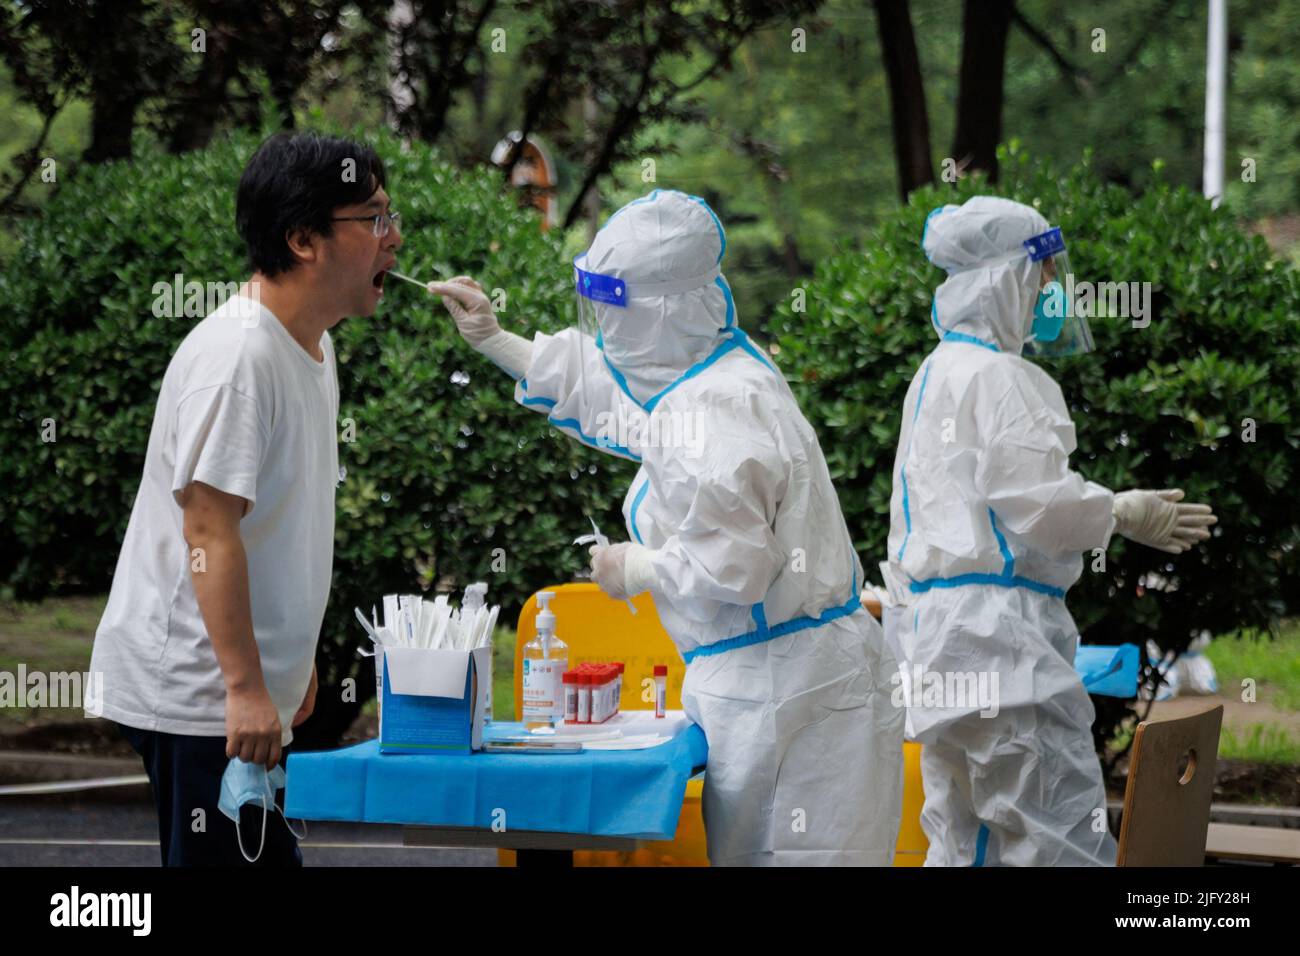 Un operatore medico prende un campione di tampone in una stazione di analisi degli acidi nucleici, a seguito di un focolaio di coronavirus (COVID-19), a Pechino, Cina, 6 luglio 2022. REUTERS/Thomas Peter Foto Stock